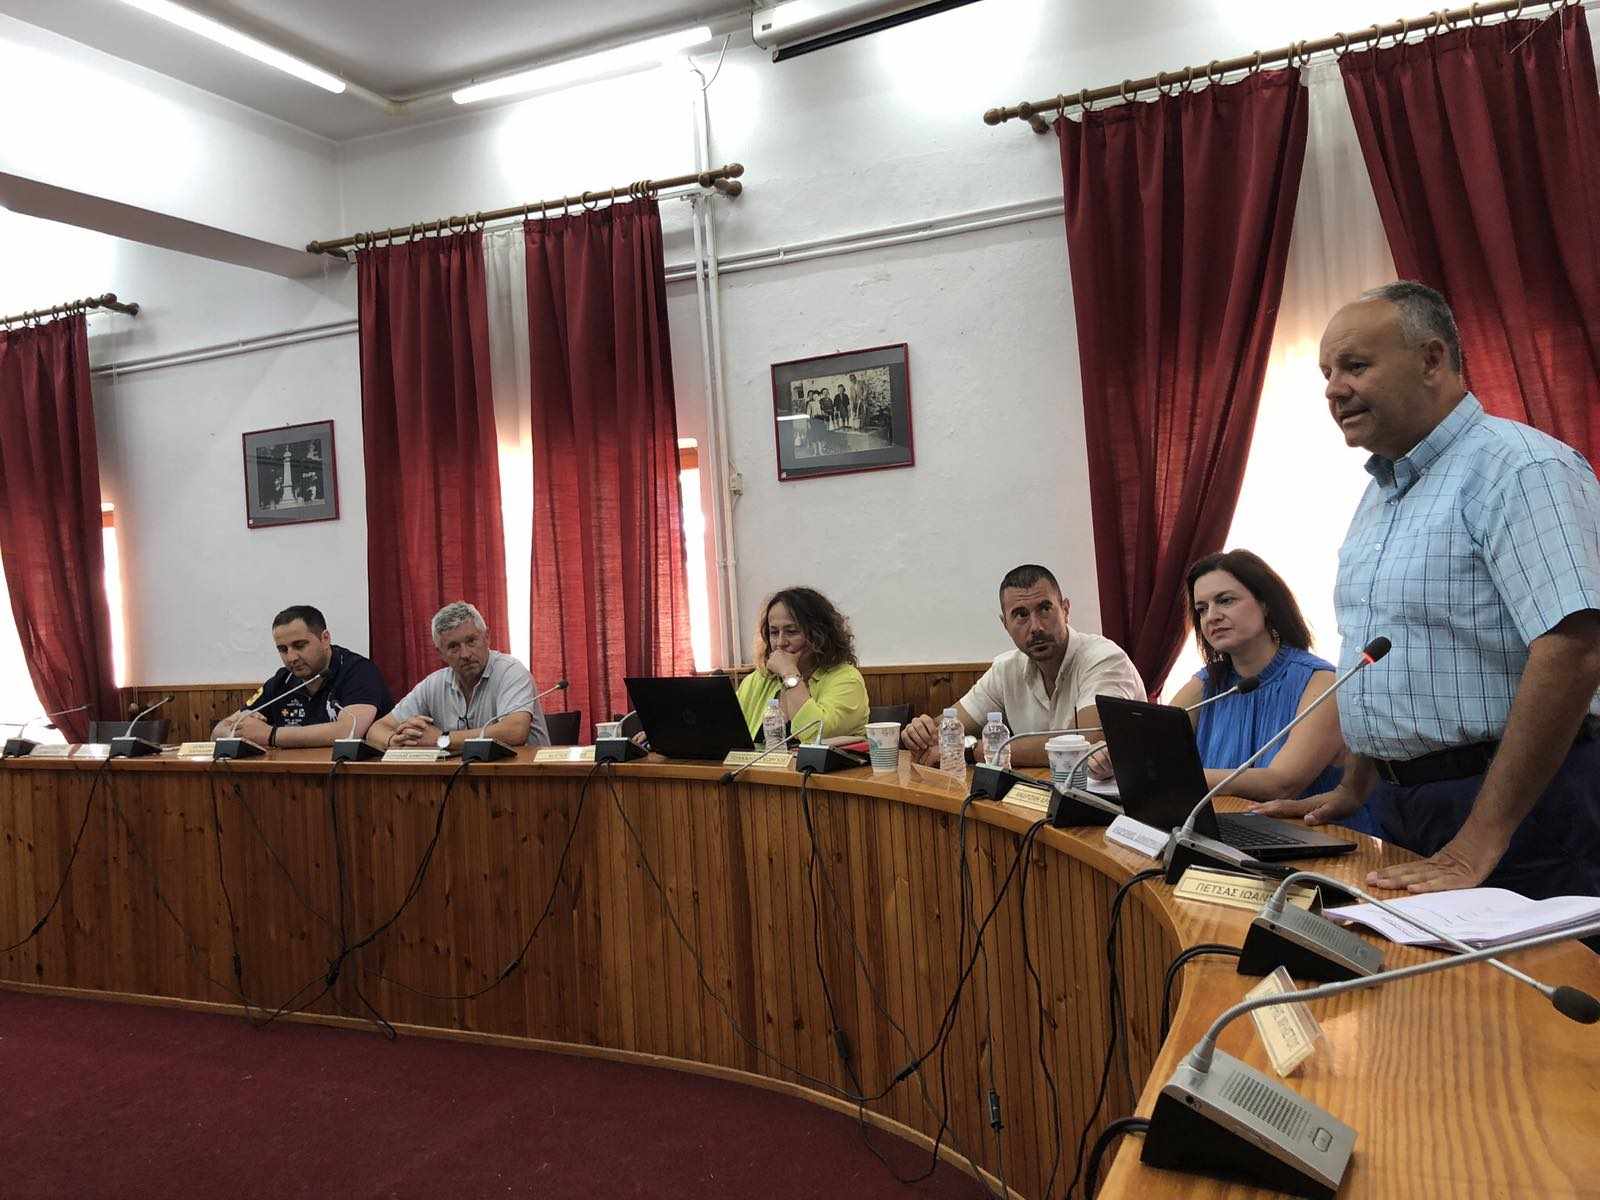 Συνάντηση εργασίας στη Δεσκάτη μεταξύ του Πανεπιστημίου Δυτικής Μακεδονίας, της Περιφέρειας Δυτικής Μακεδονίας, της κτηνιατρικής υπηρεσίας και του Δήμου Δεσκάτης